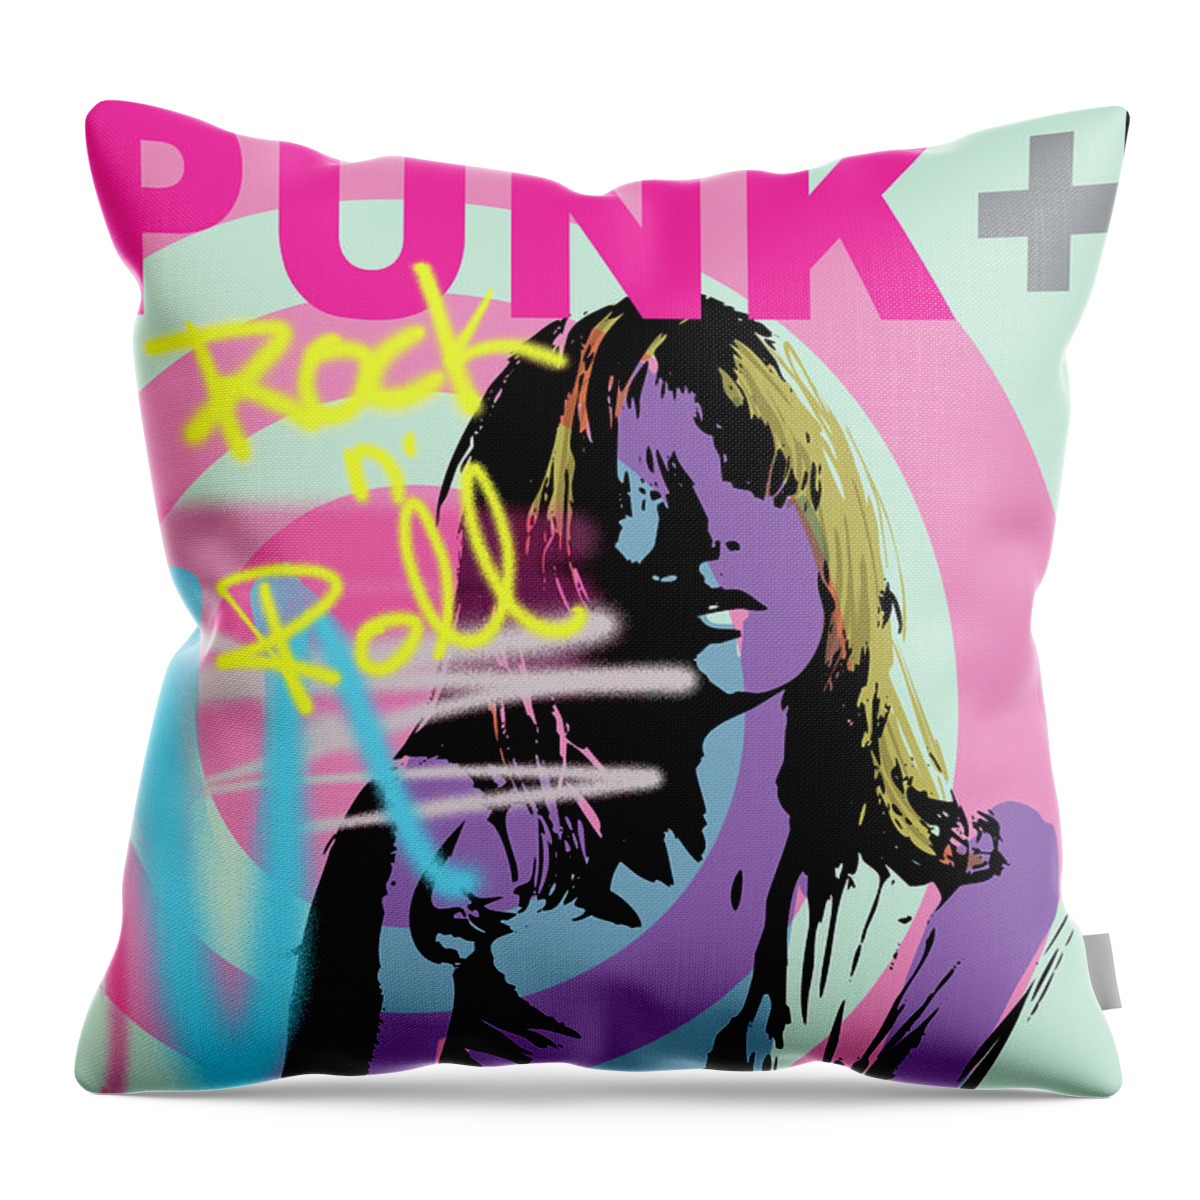 Punk Throw Pillow featuring the digital art Punk Girl by Art Popop